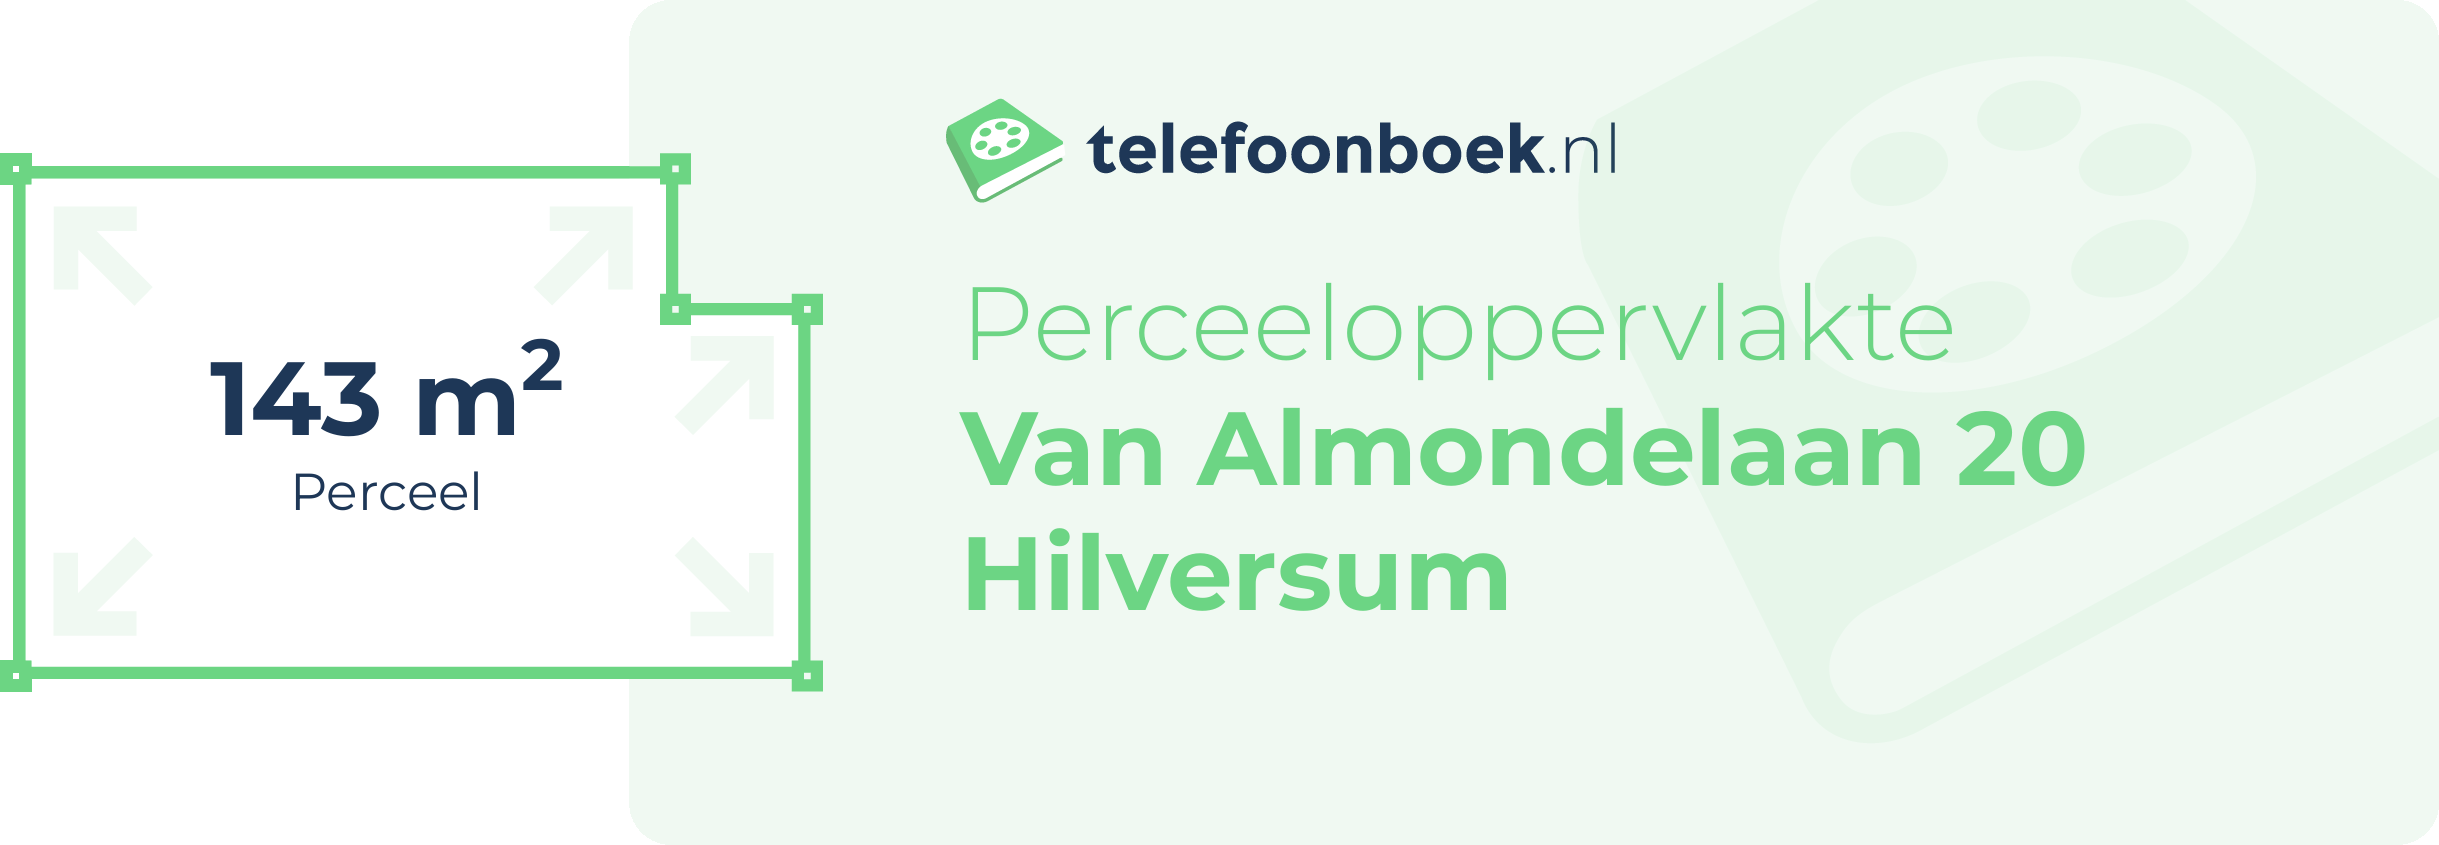 Perceeloppervlakte Van Almondelaan 20 Hilversum